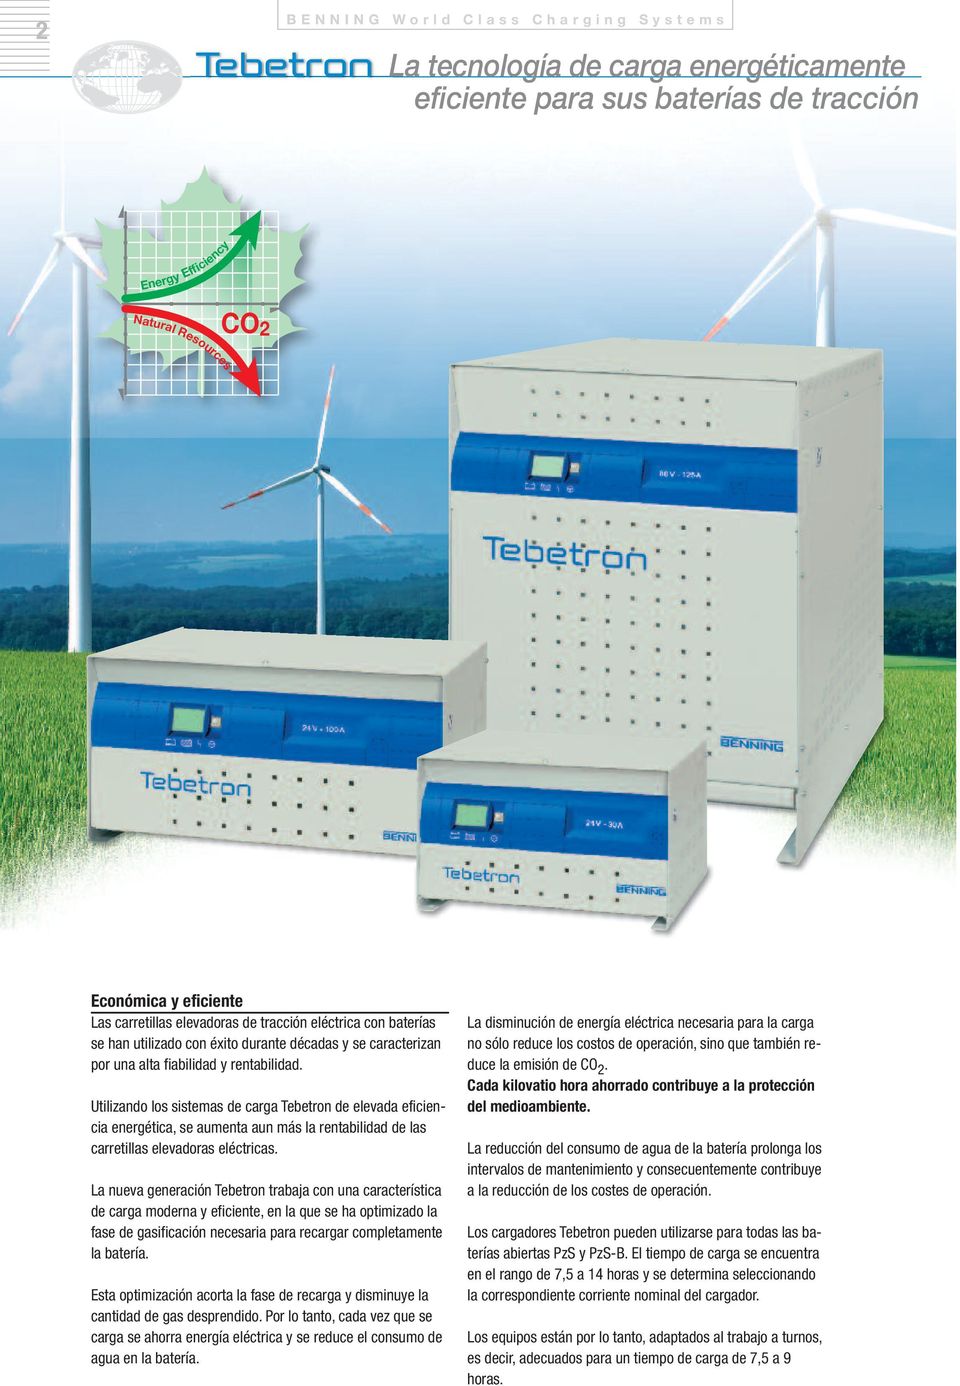 Utilizando los sistemas de carga Tebetron de elevada eficiencia energética, se aumenta aun más la rentabilidad de las carretillas elevadoras eléctricas.